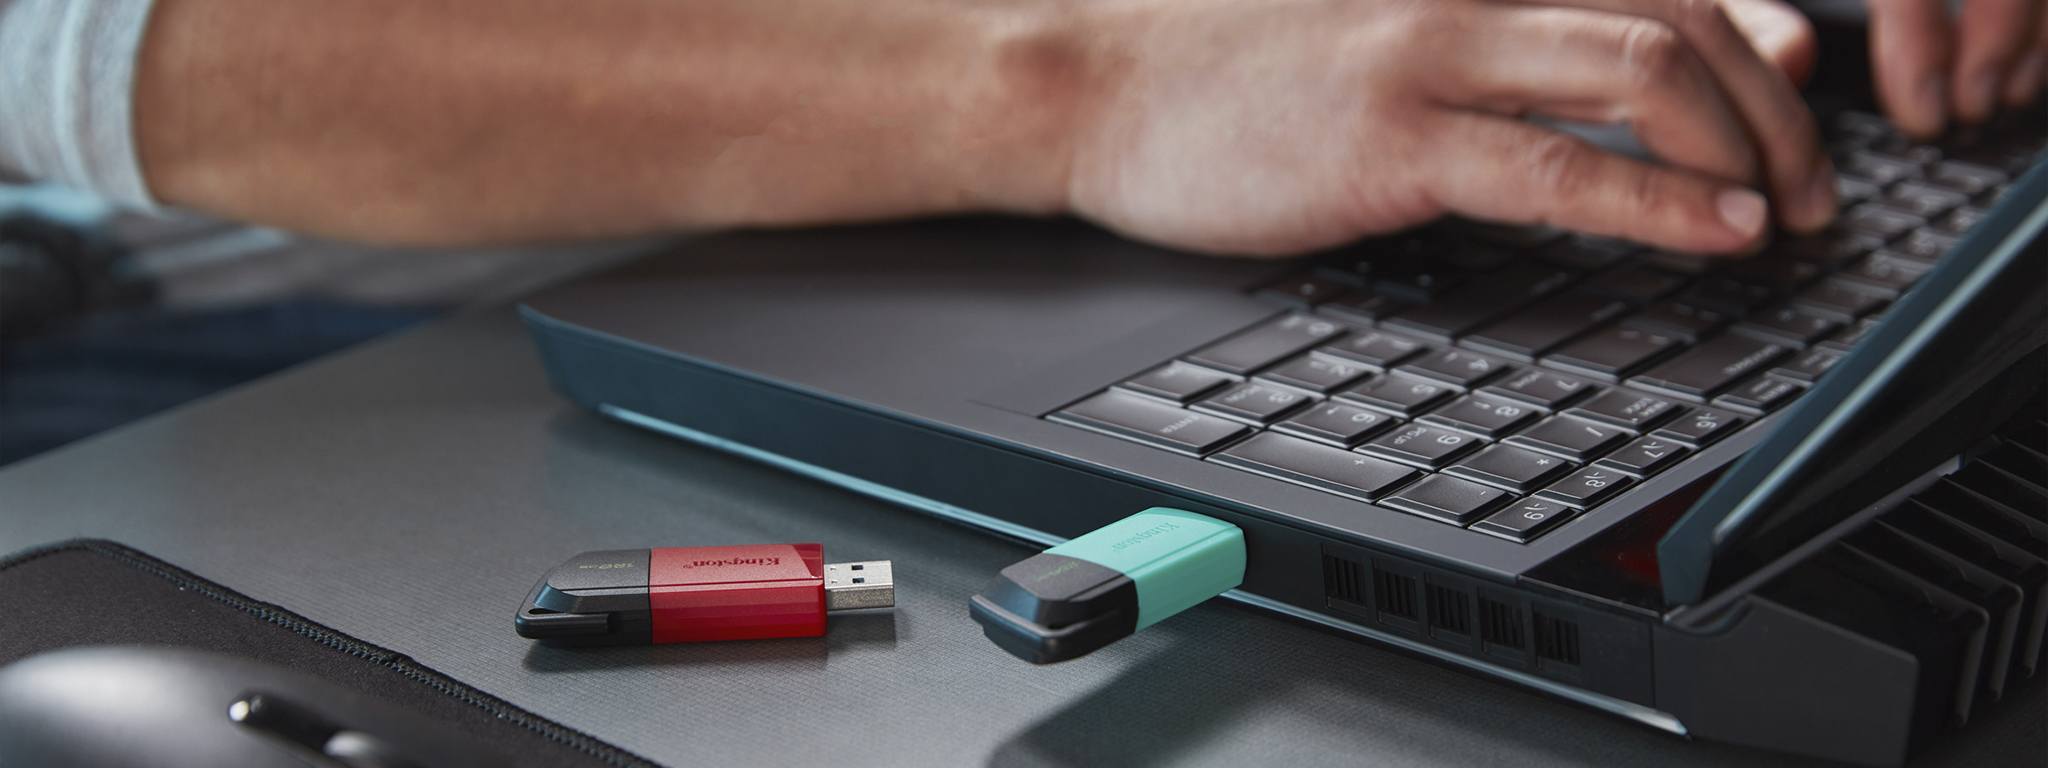 2 USB DT Exodia M, один с зеленой крышкой и один с красной крышкой, на стола с работающим за ноутбуком человеком на заднем плане